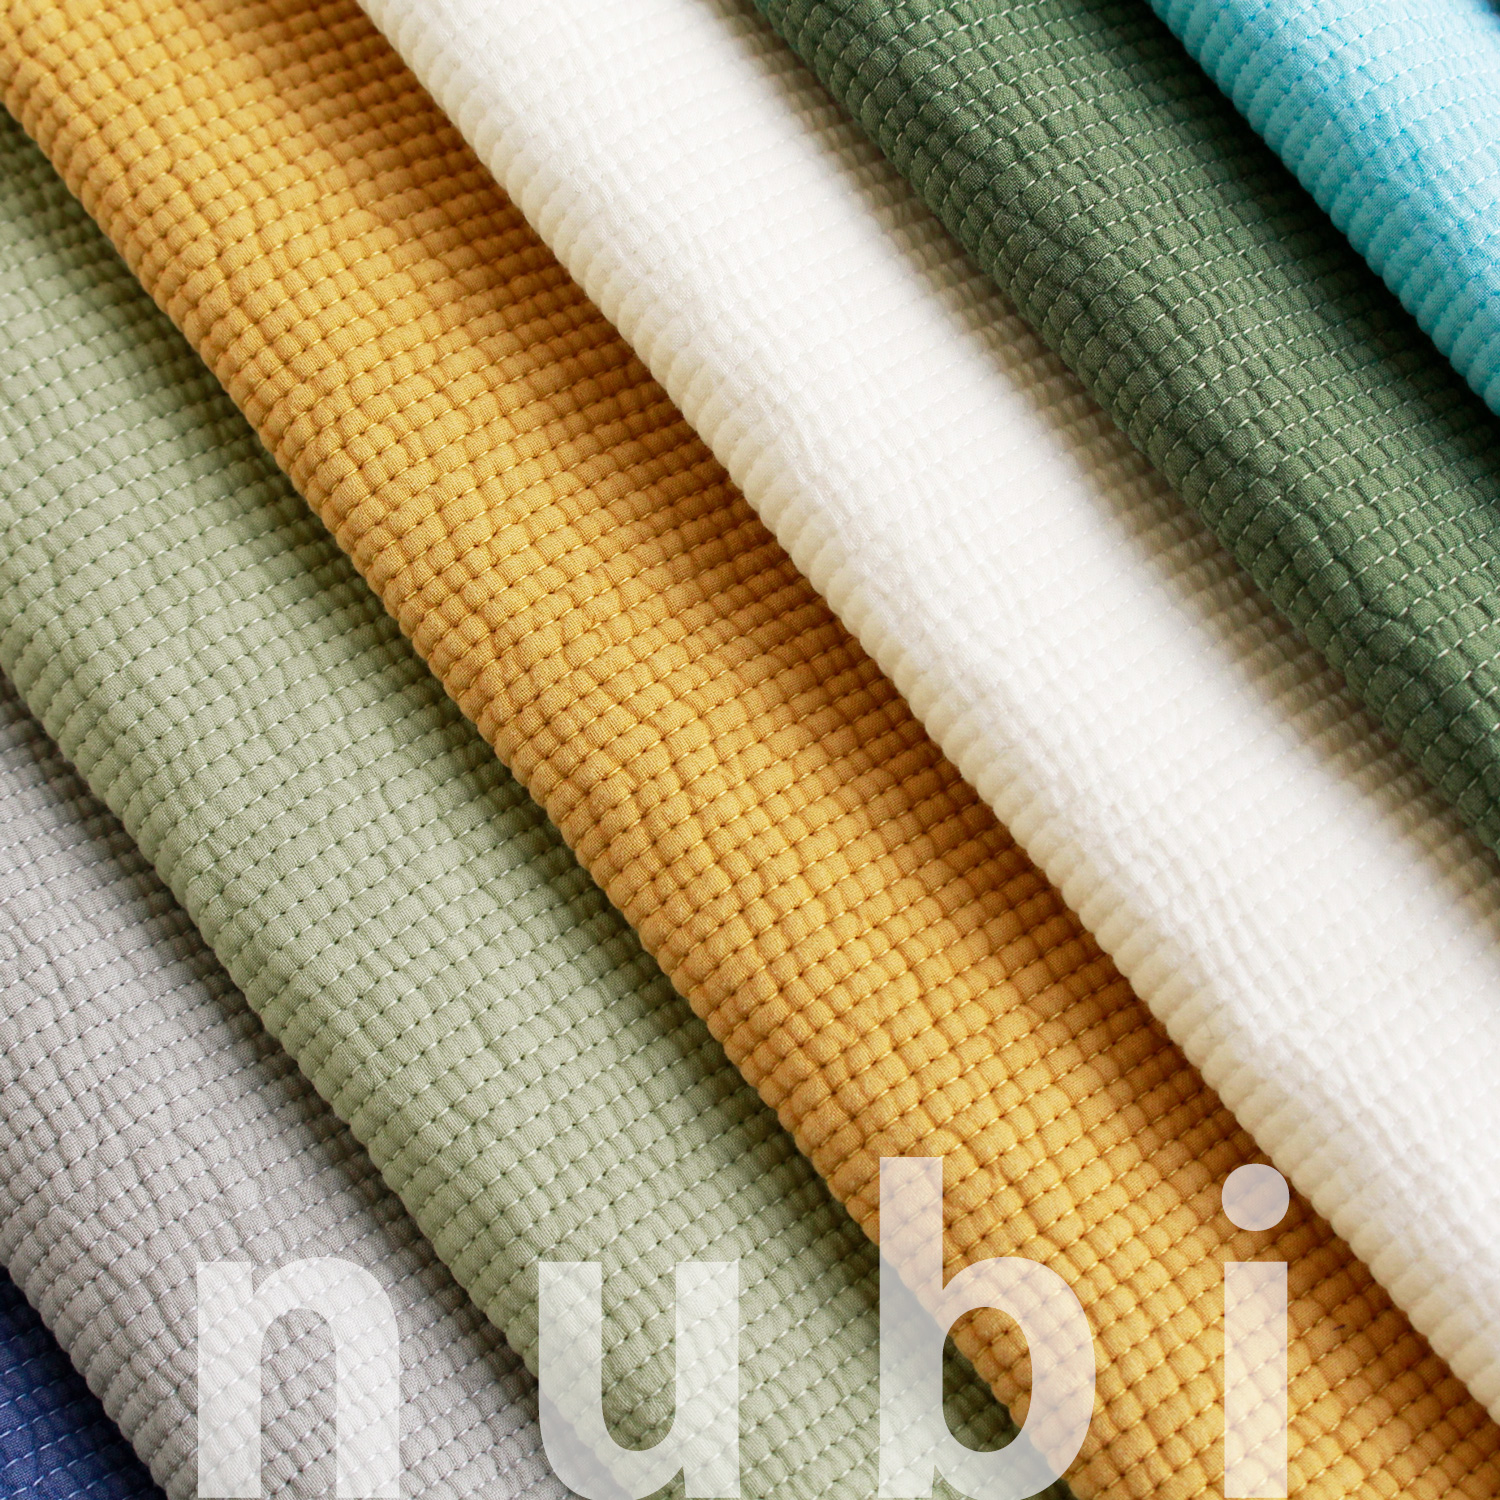 ■NBY303R nubi ヌビ 韓国伝統キルティング生地 巾3mmサイズ 原反約8m乱巻 (巻) 3